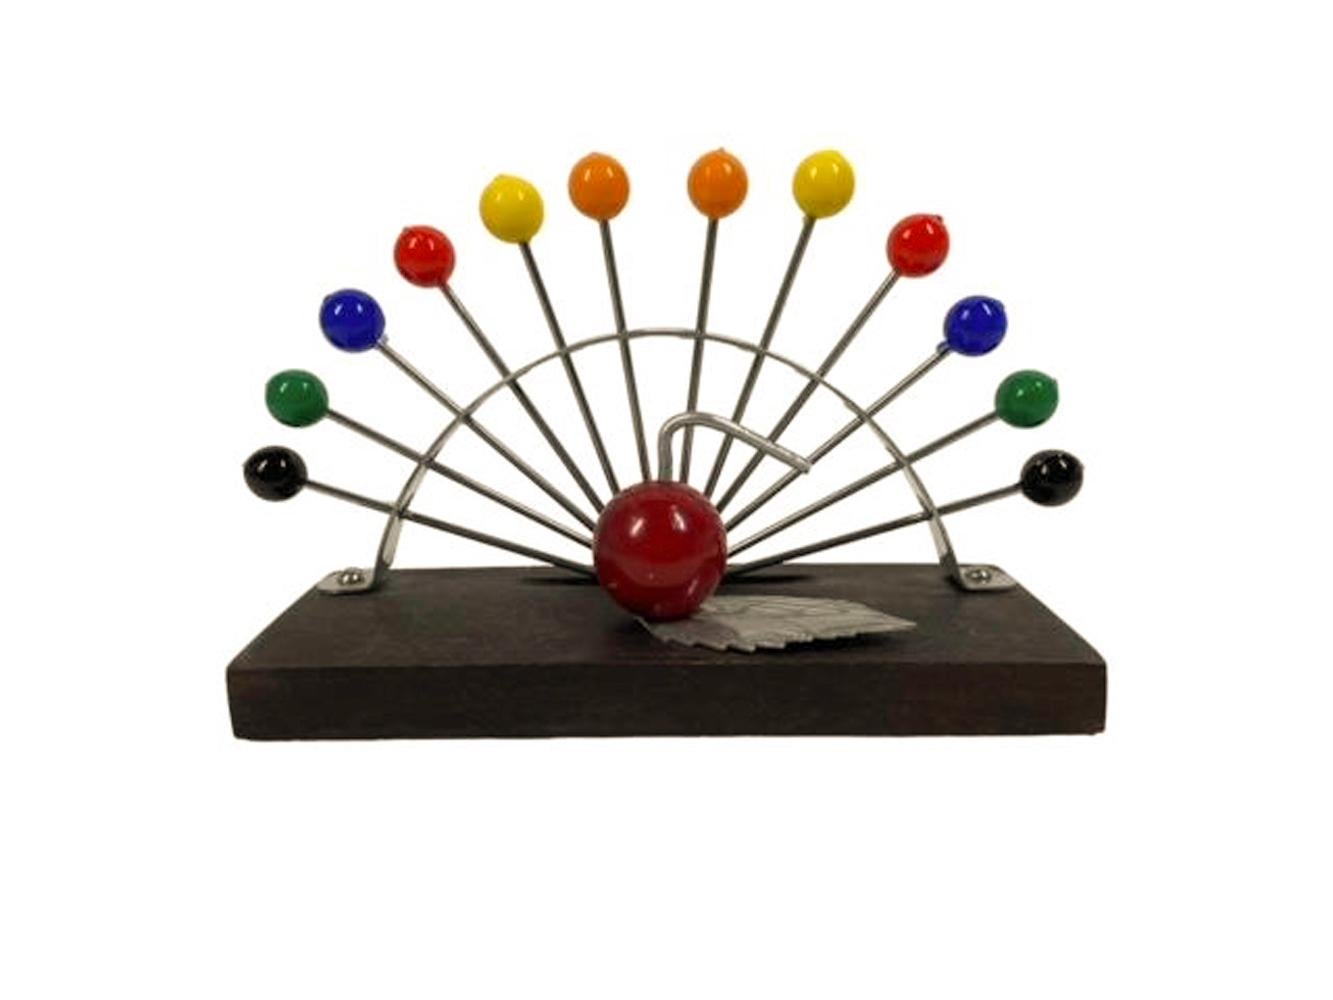 Ensemble de 12 pics à cocktail Art déco français (2 de chaque couleur), accompagné d'un support comportant une pomme en bakélite rouge et chrome sur une base en bois devant un arc en métal perforé qui maintient les pics en arc de cercle.